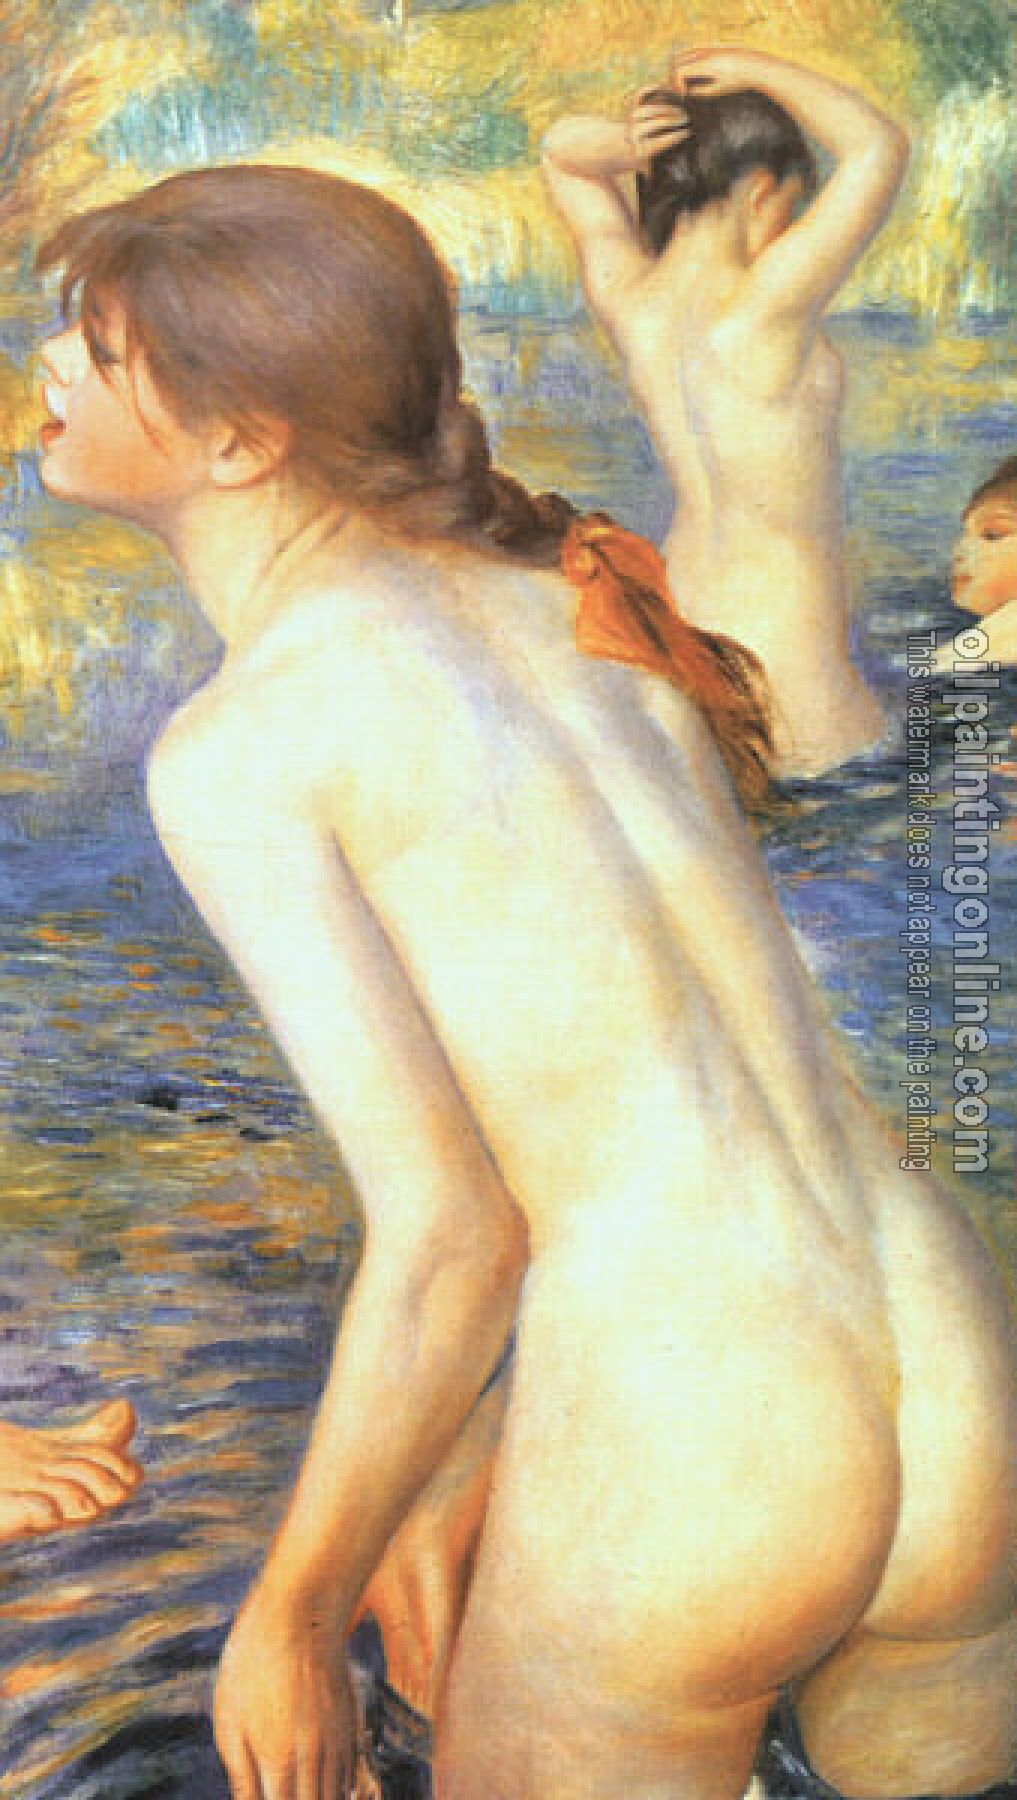 Renoir, Pierre Auguste - The Large Bathers (detail)